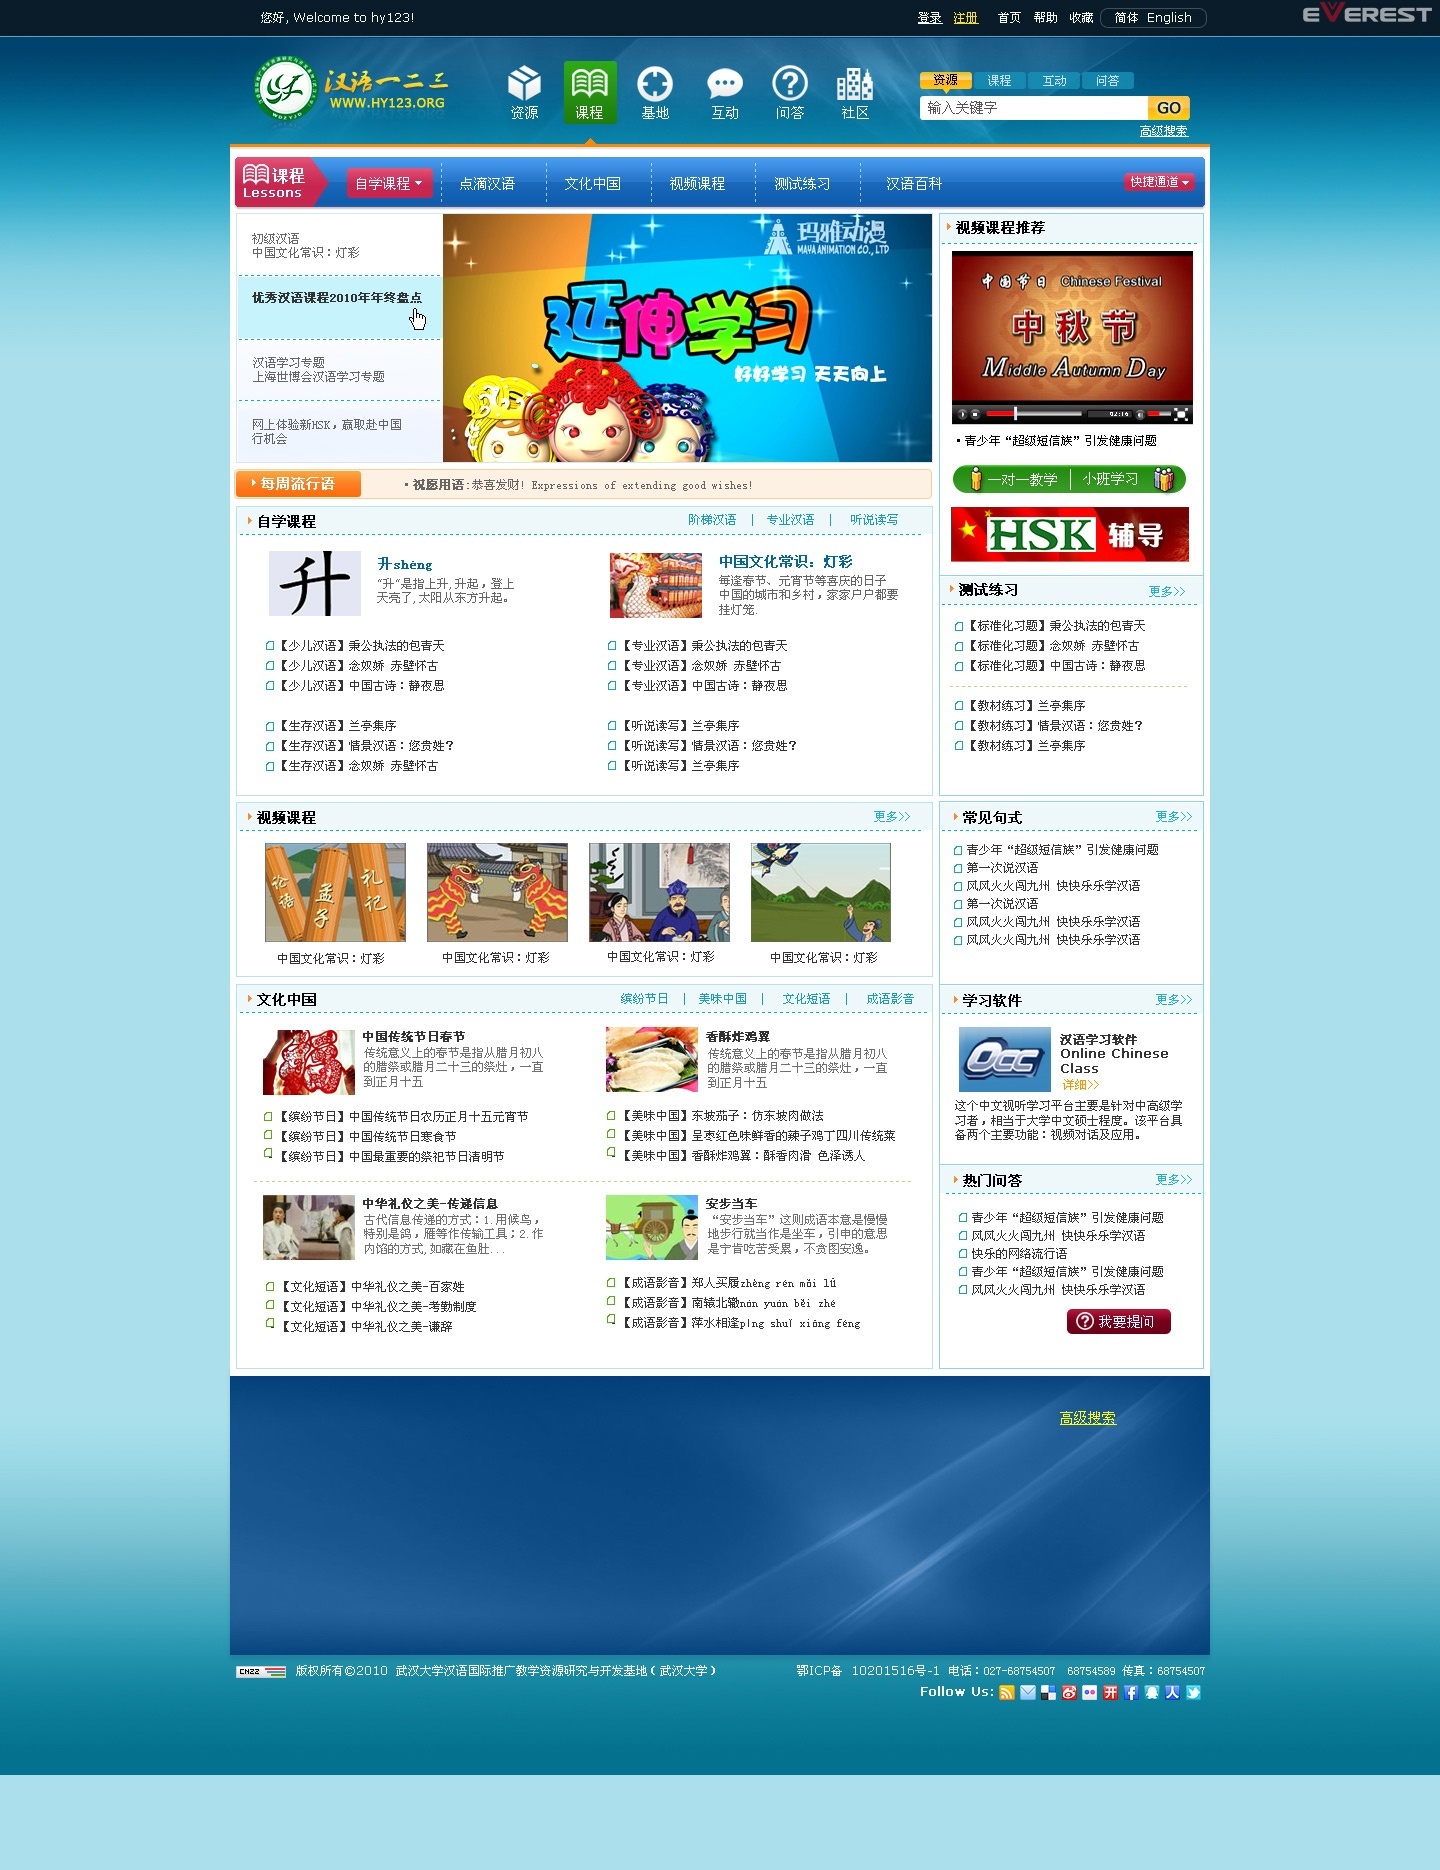 教育网站设计 汉推基地项目课程及官方站设计集锦